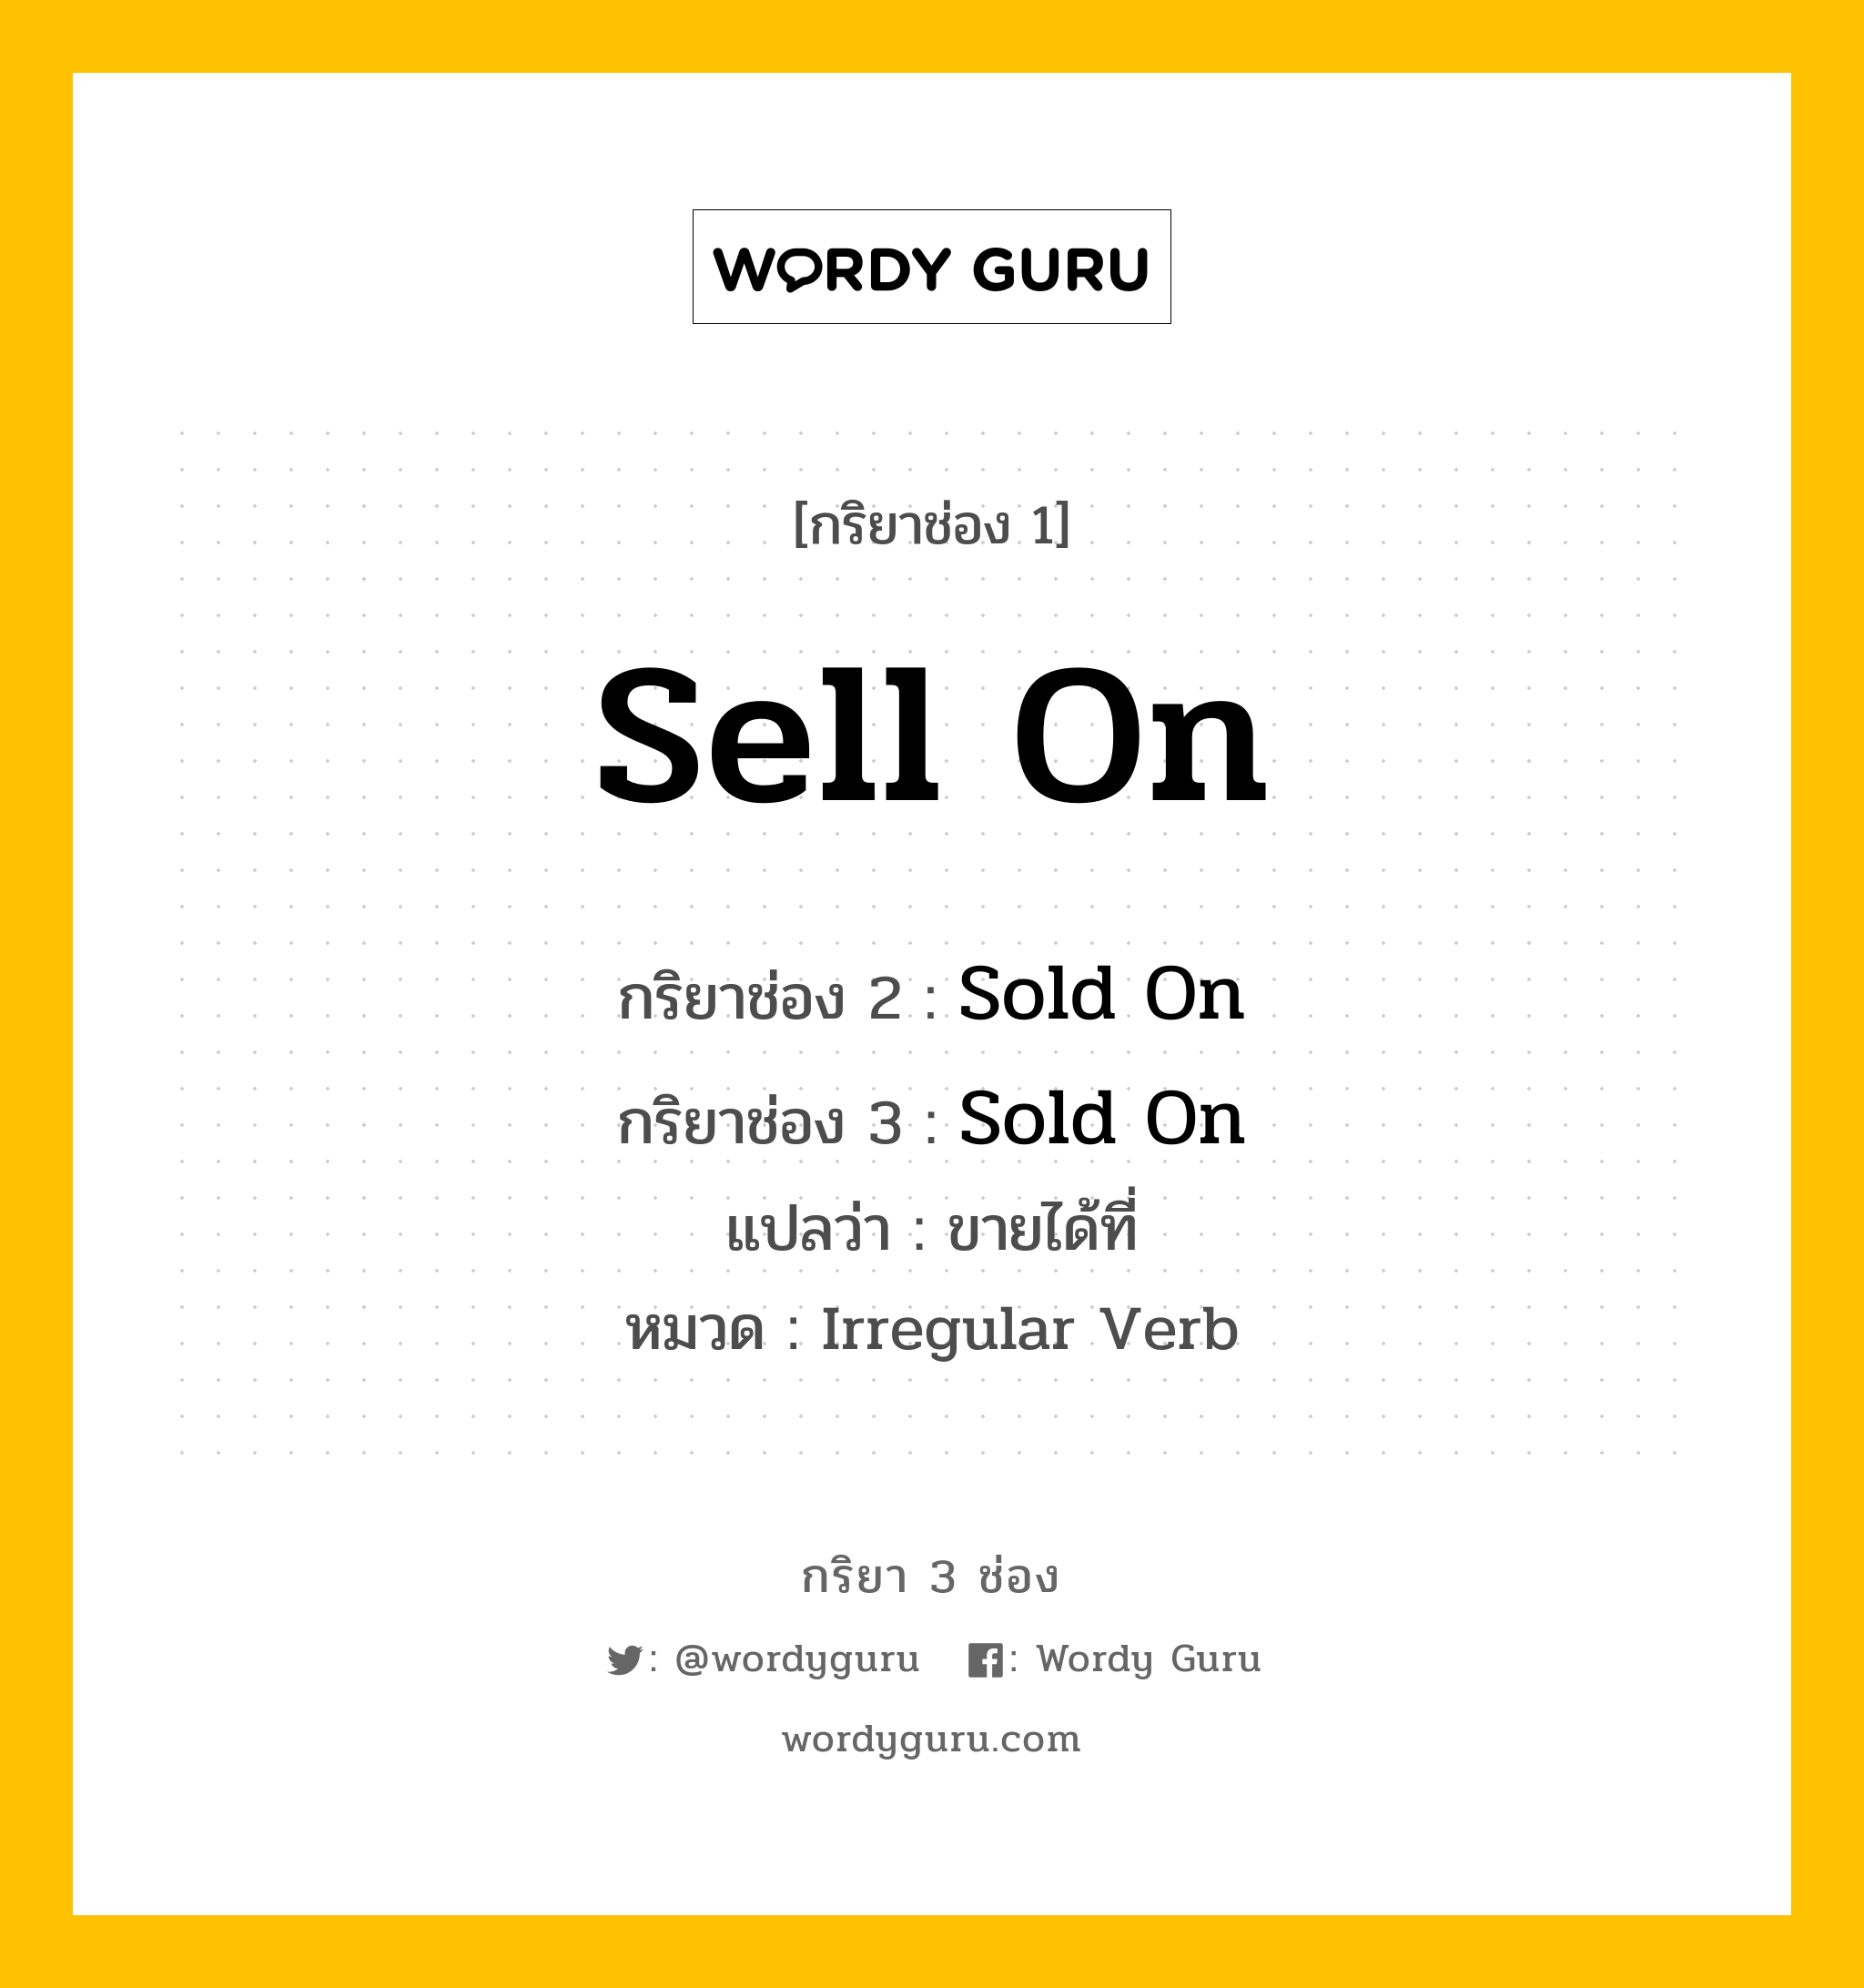 กริยา 3 ช่อง: Sell On ช่อง 2 Sell On ช่อง 3 คืออะไร, กริยาช่อง 1 Sell On กริยาช่อง 2 Sold On กริยาช่อง 3 Sold On แปลว่า ขายได้ที่ หมวด Irregular Verb หมวด Irregular Verb